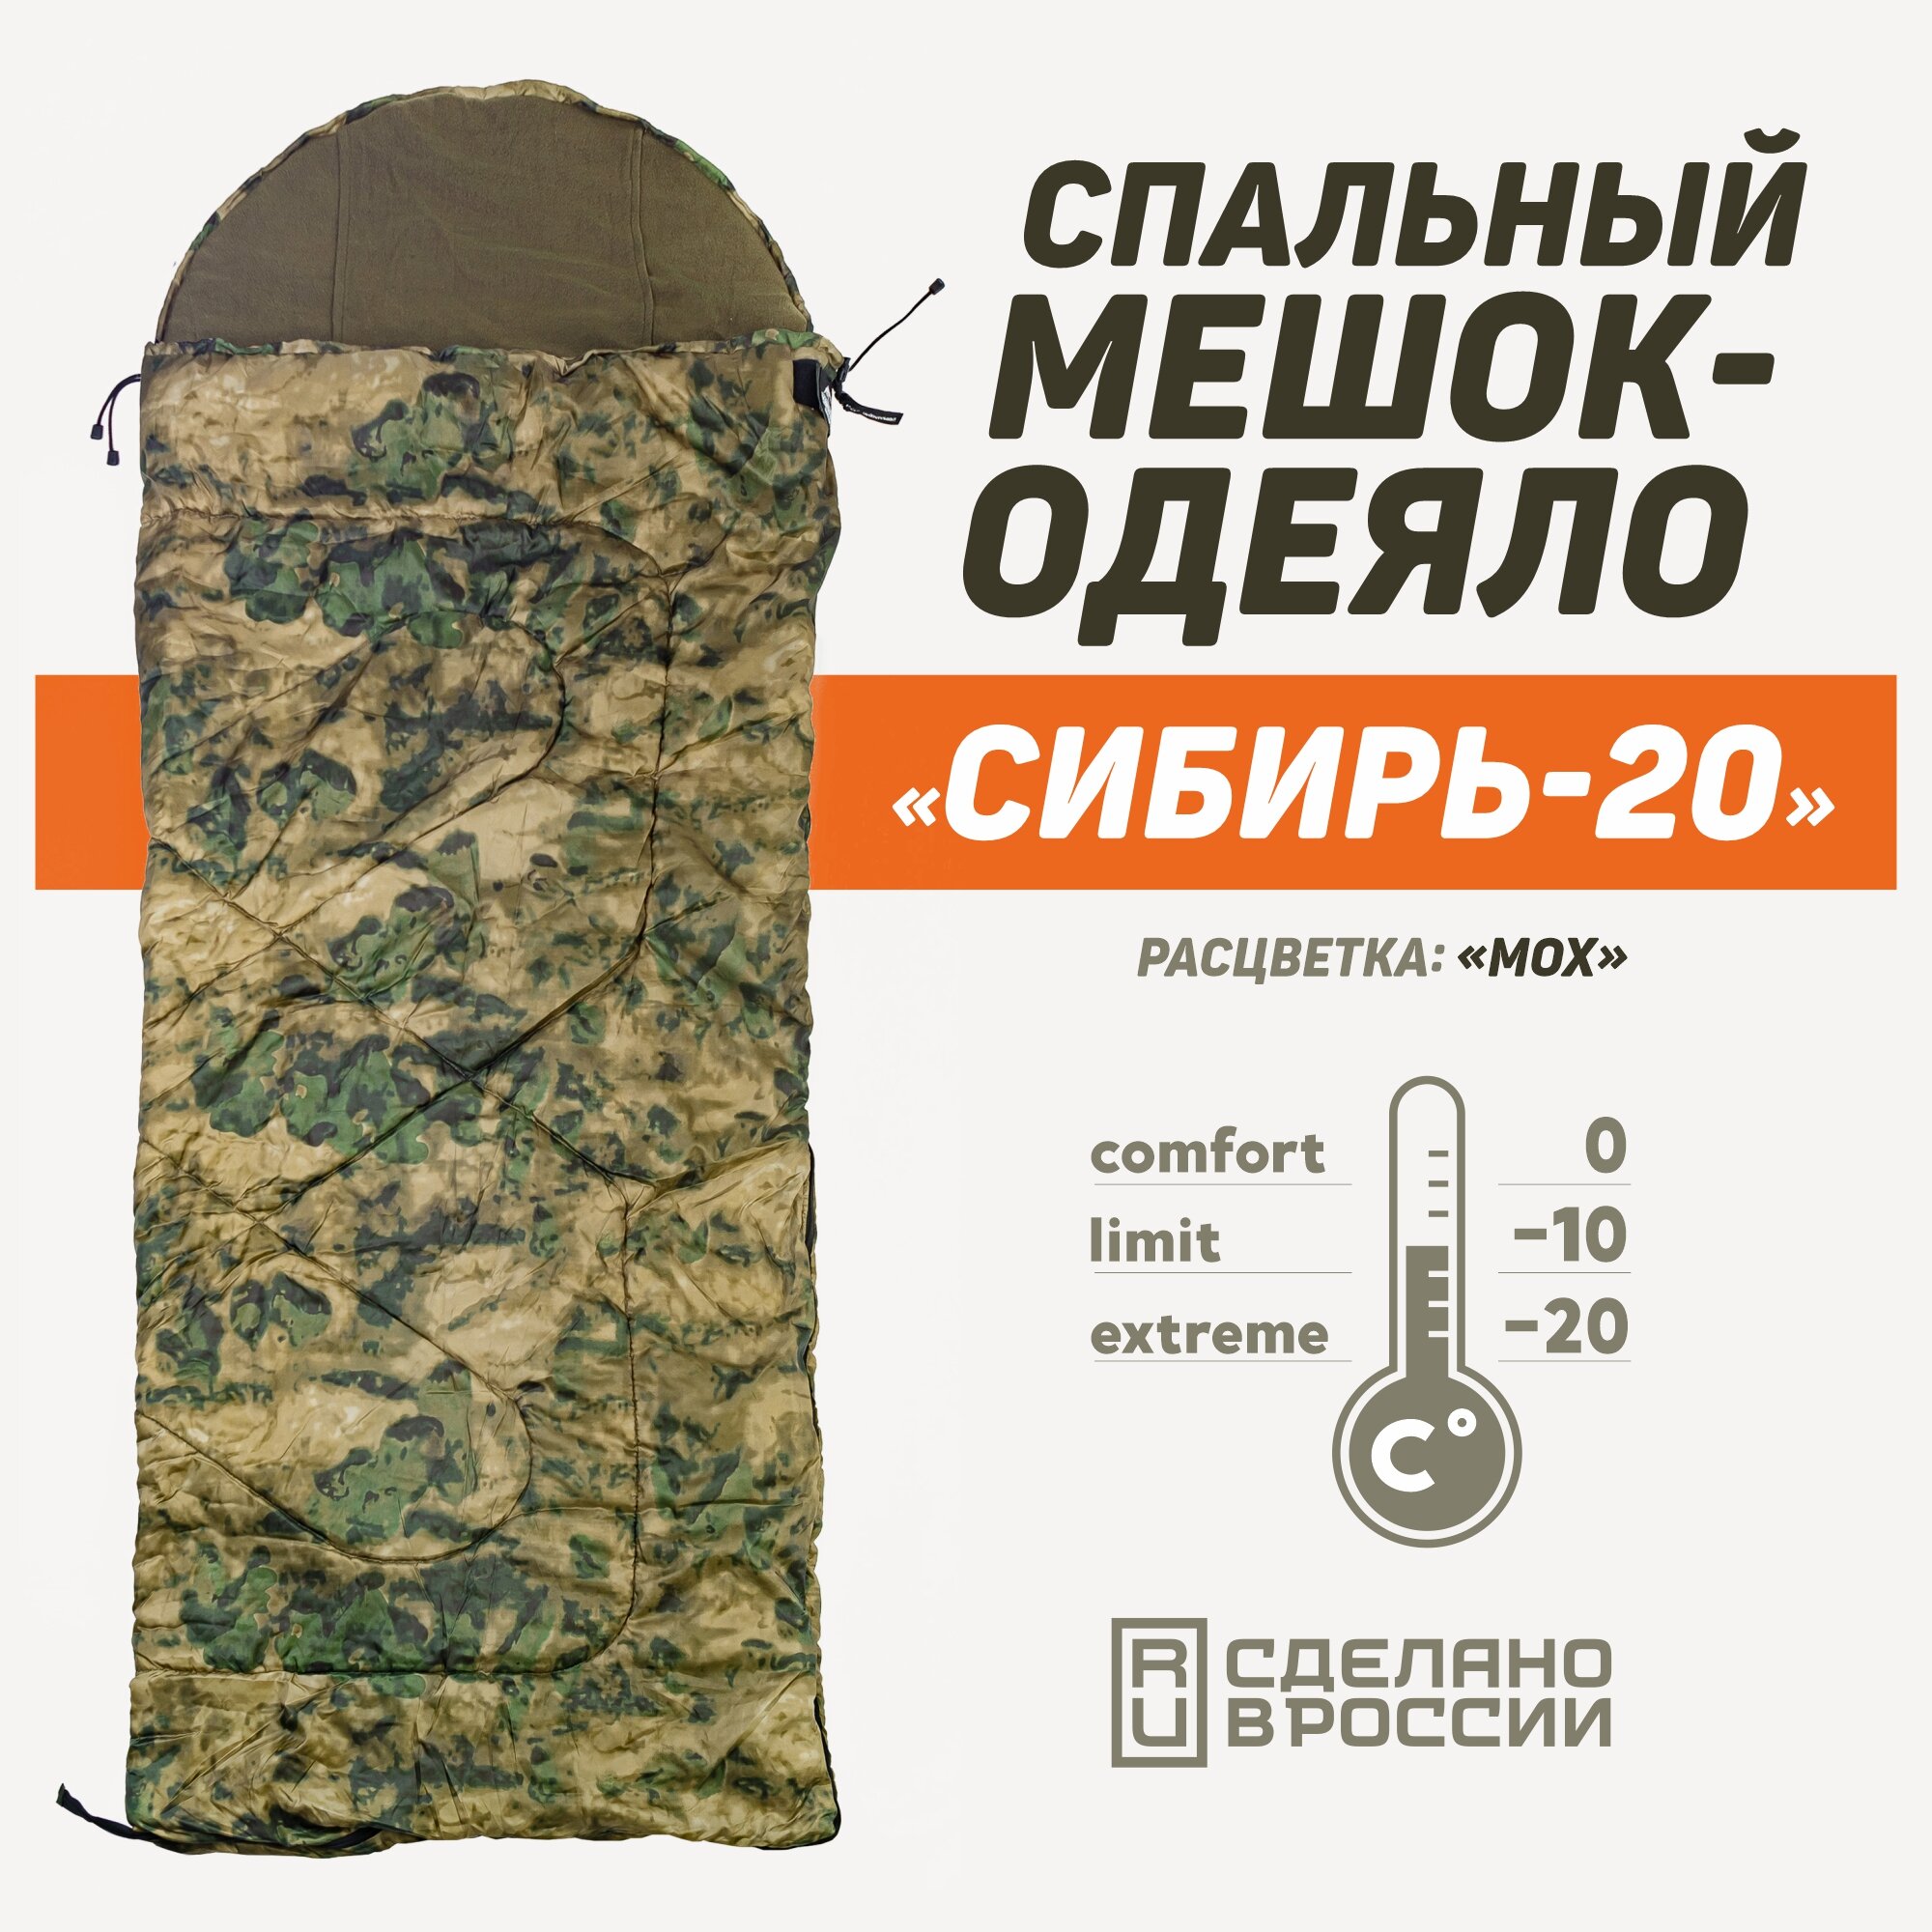 Спальный мешок "Сибирь -20" от бренда "Подопригору" легкий и водонепроницаемый цвет - "Цифра-Пиксель". Для туризма охоты и рыбалки